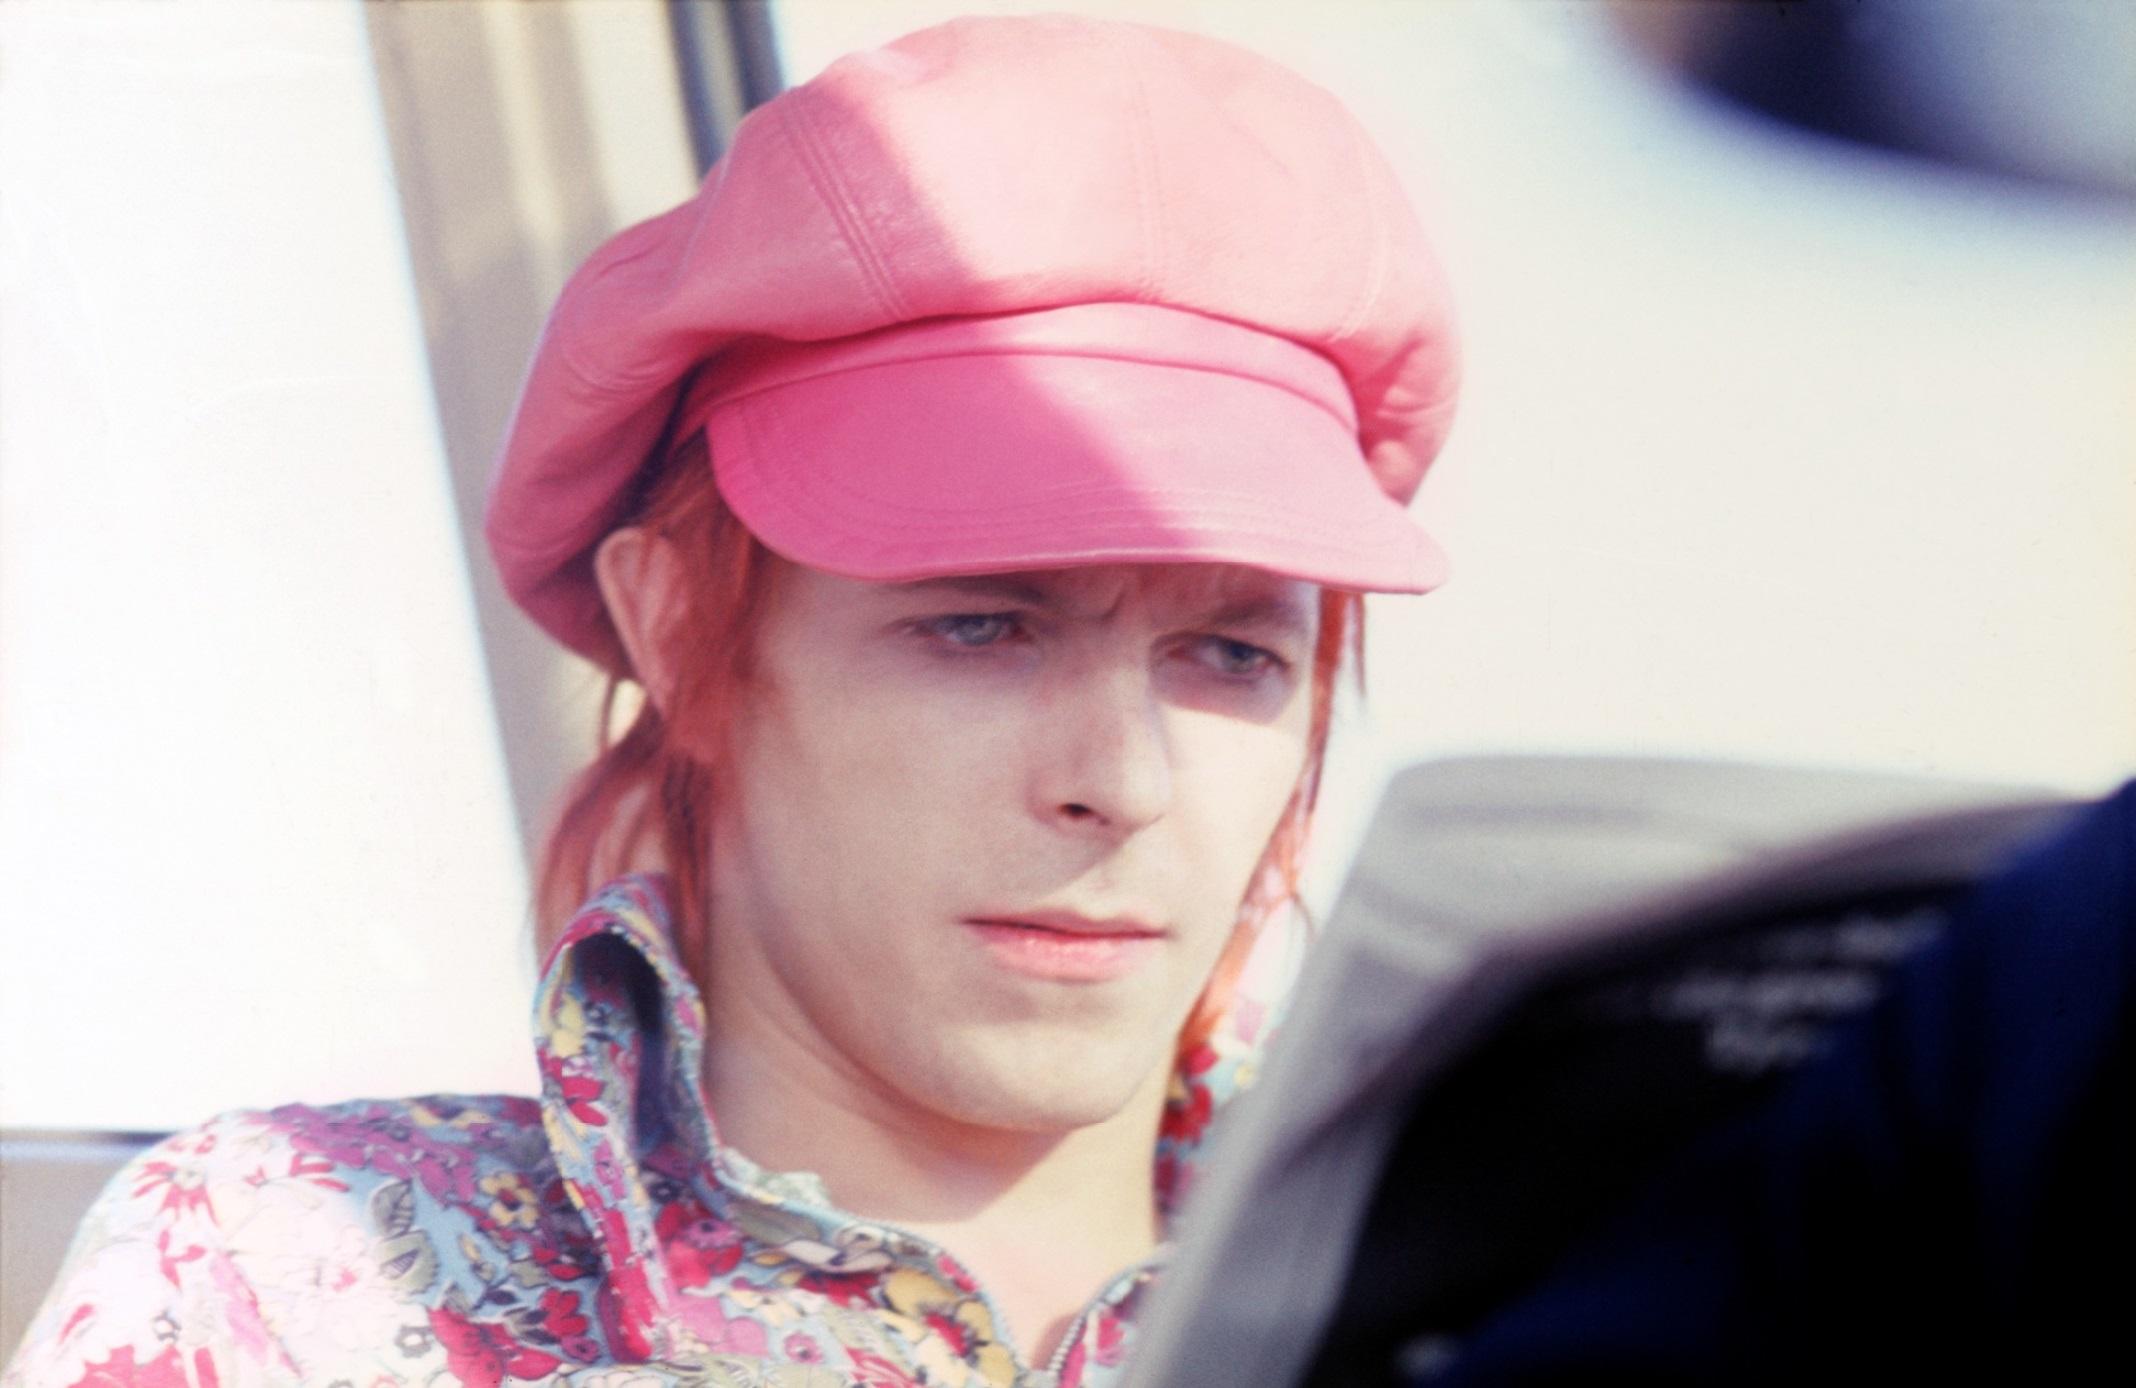 David Bowie - Impression en édition limitée signée 

David Bowie avec un chapeau rose, 1972. (photo Mick Rock)

Dimensions du papier : 51 x 61 cm

Estampillée et numérotée par la succession.

Impression pigmentaire d'archives.

Édition de 50